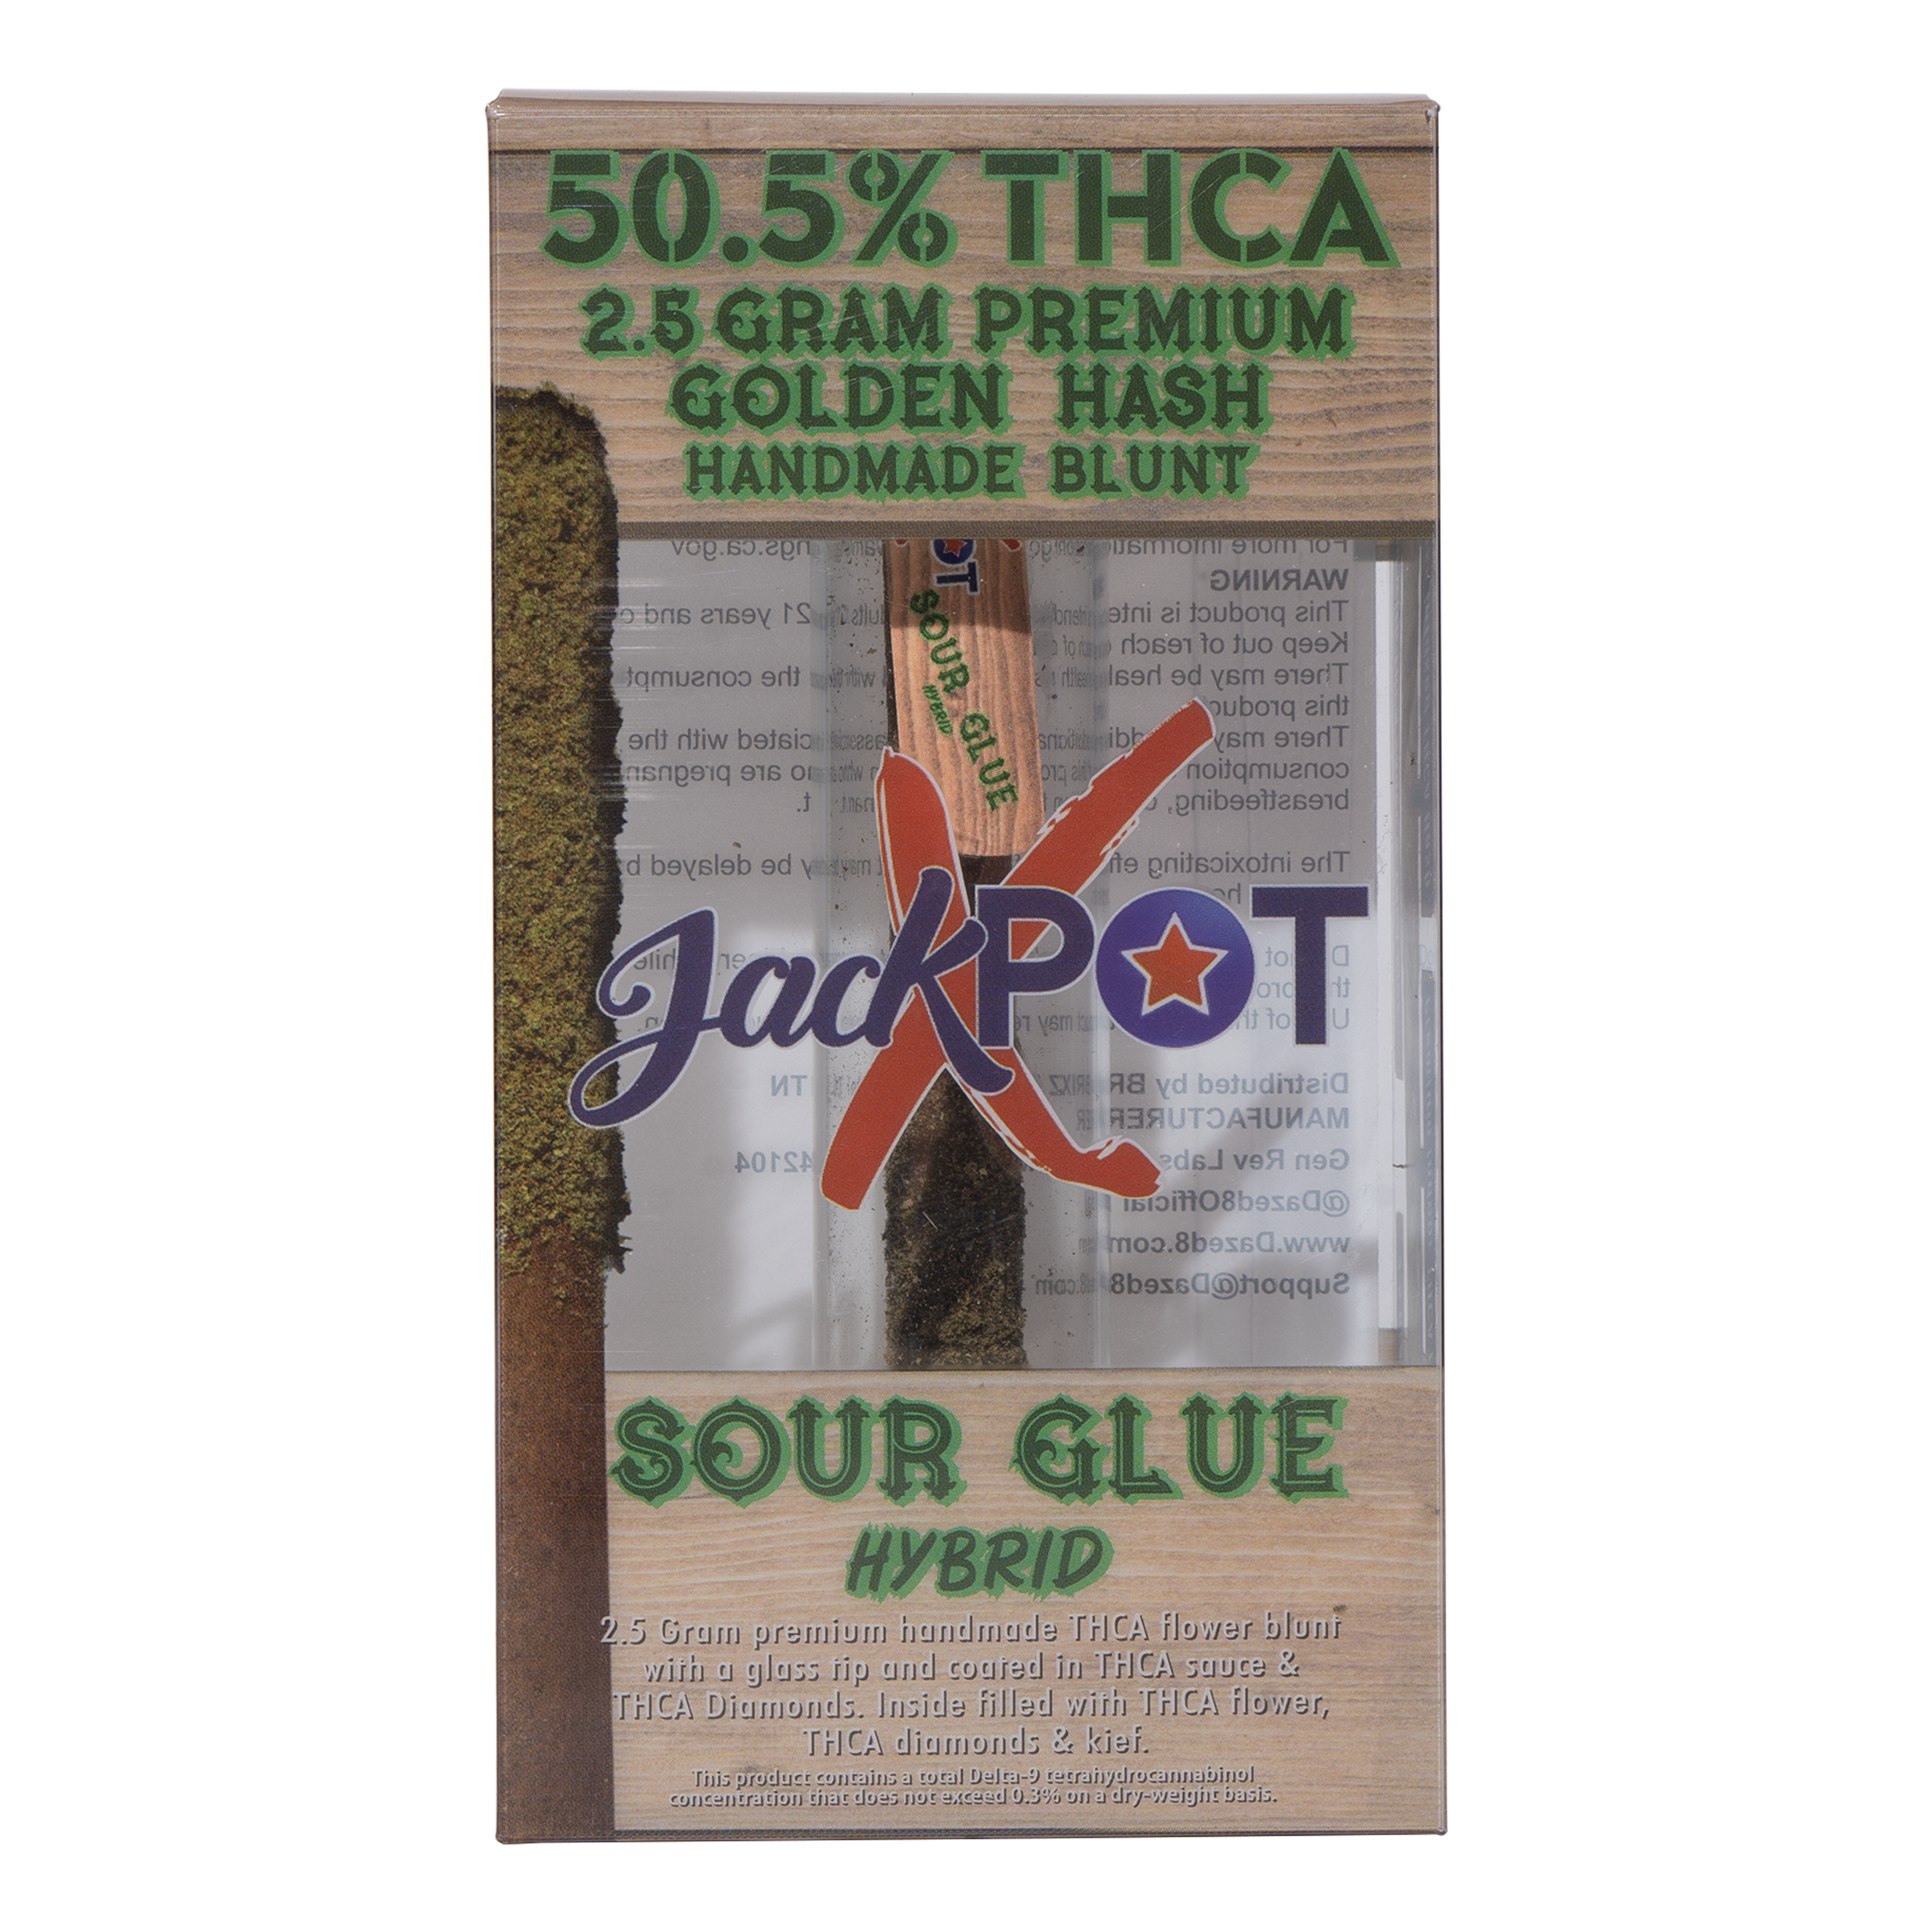 DAZED | JACKPOT GOLDEN HASH THC-A HANDMADE BLUNT SINGLE | 2.5G